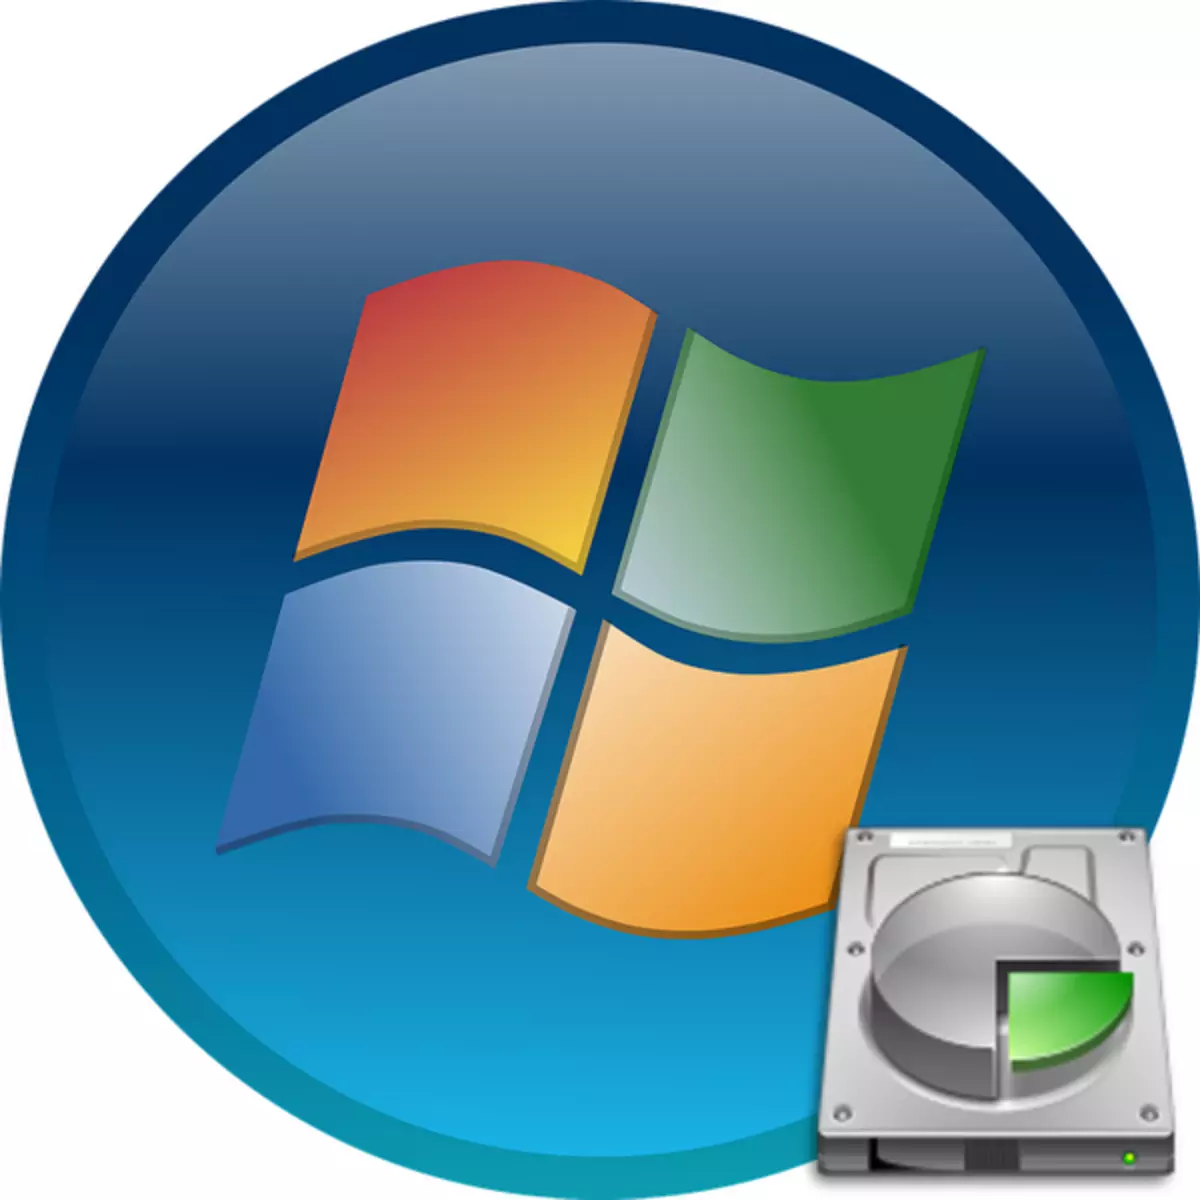 Cách xóa phần "Hệ thống dành riêng" trong Windows 7